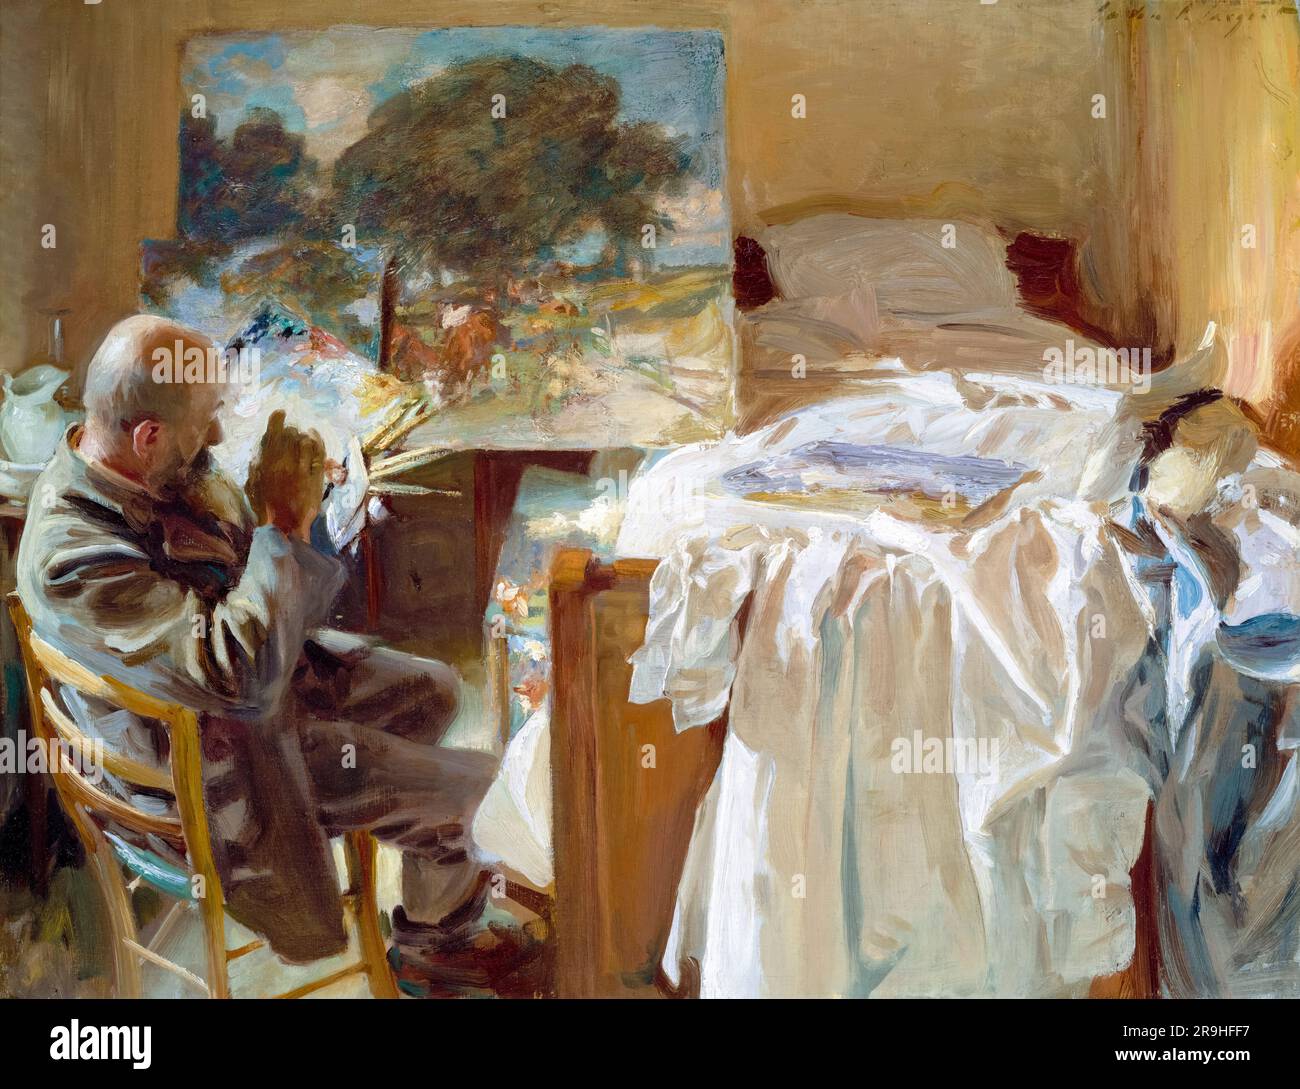 John Singer Sargent, artiste dans son studio, peinture à l'huile sur toile, 1904 Banque D'Images